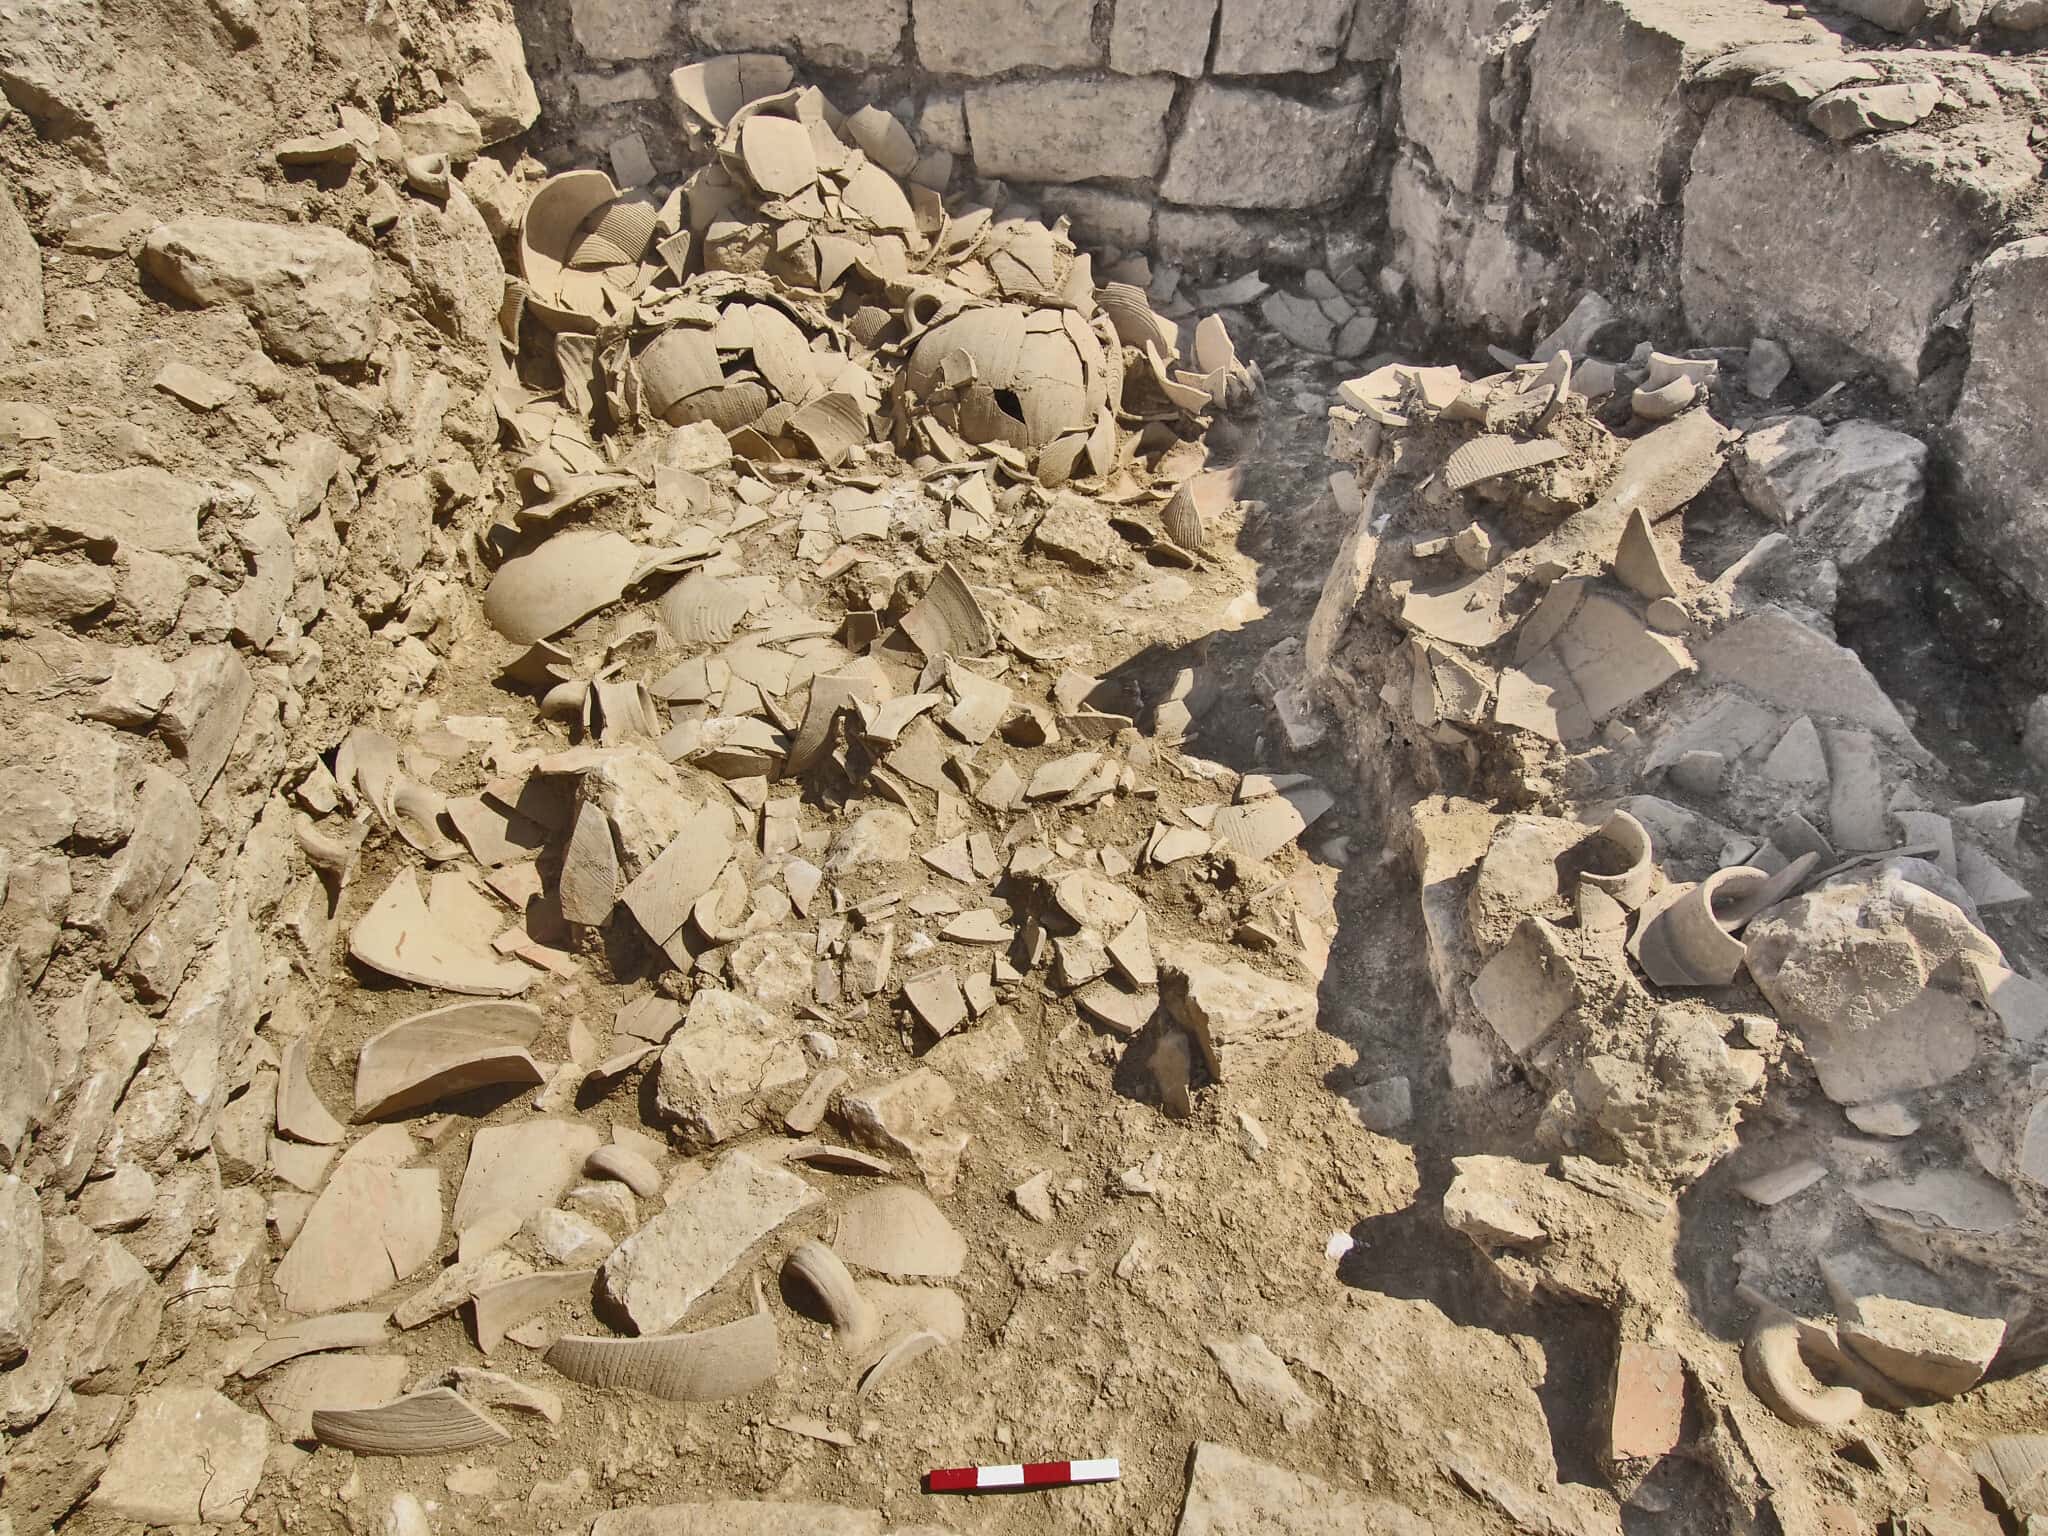 כלים מהתקופה האומיית שהתנפצו במהלך רעידת האדמה הגדולה של שנת 749 לספירה והתגלו ביישוב העתיק כפר מור, כיום שכונה בבית אל (צילום: דוברות משרד מתאם פעולות הממשלה בשטחים)